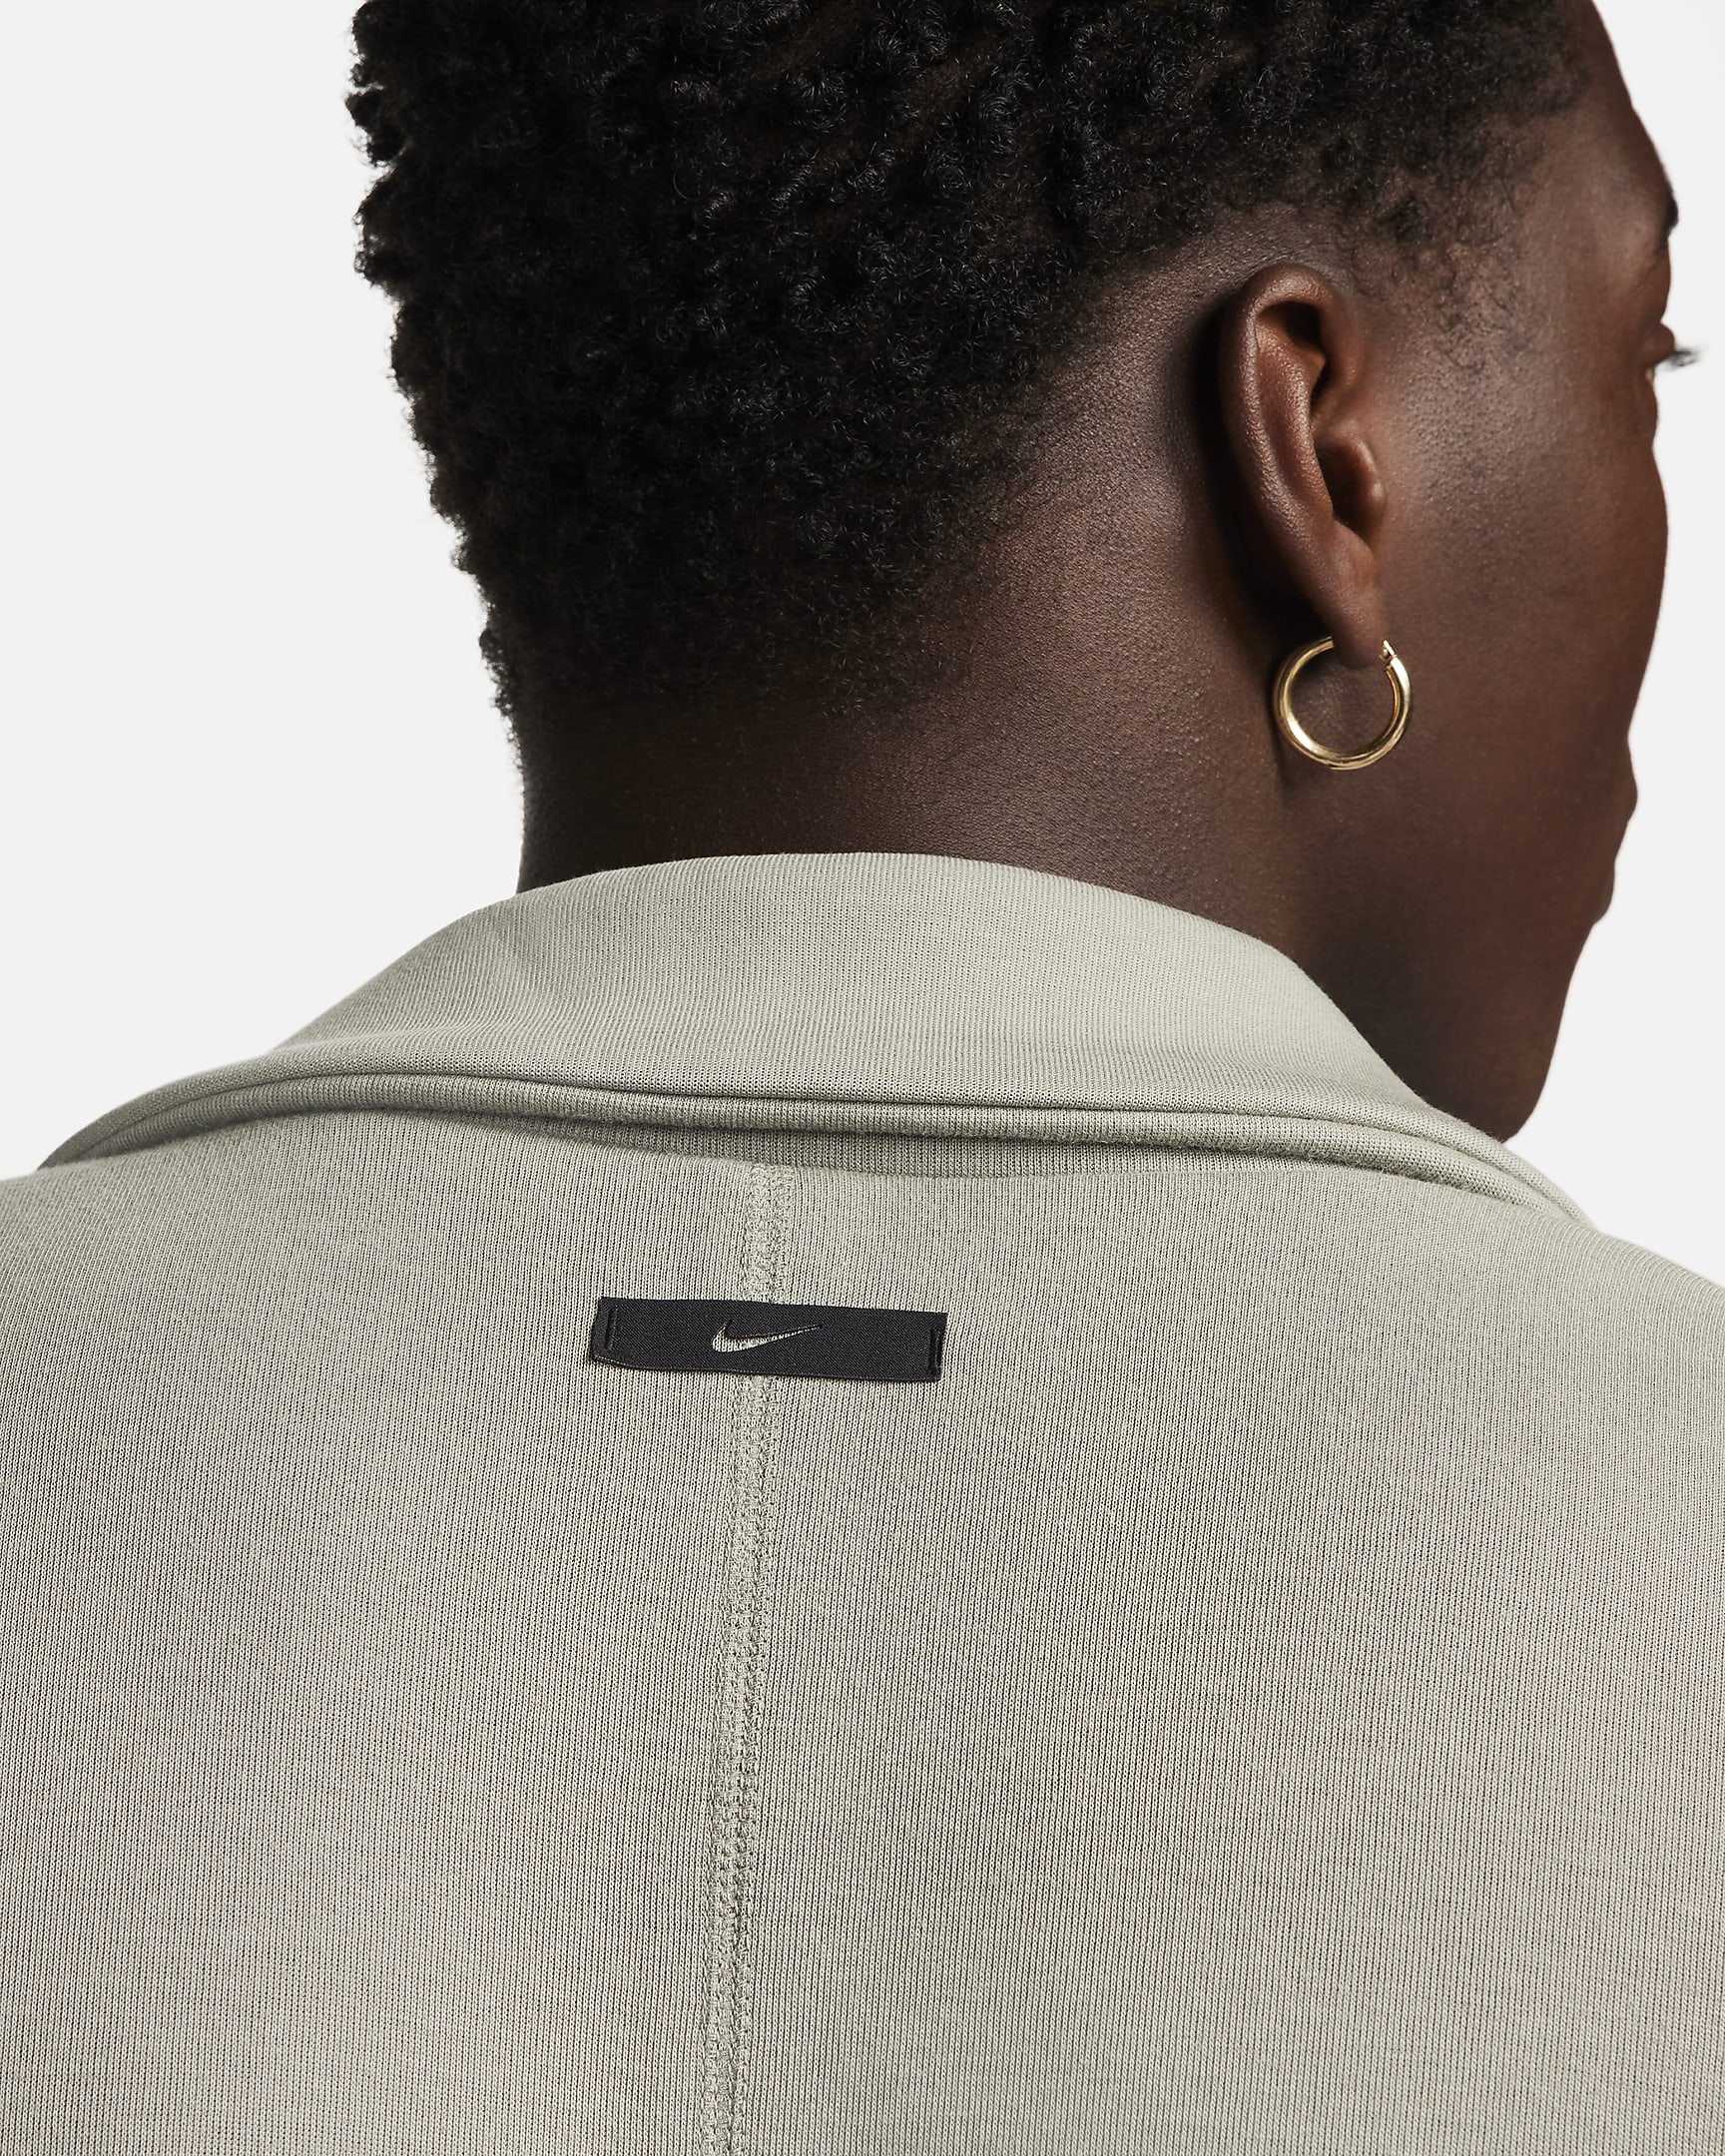 Nike Sportswear Tech Fleece Re-Imagined Men's Loose Fit Trench Coat ...